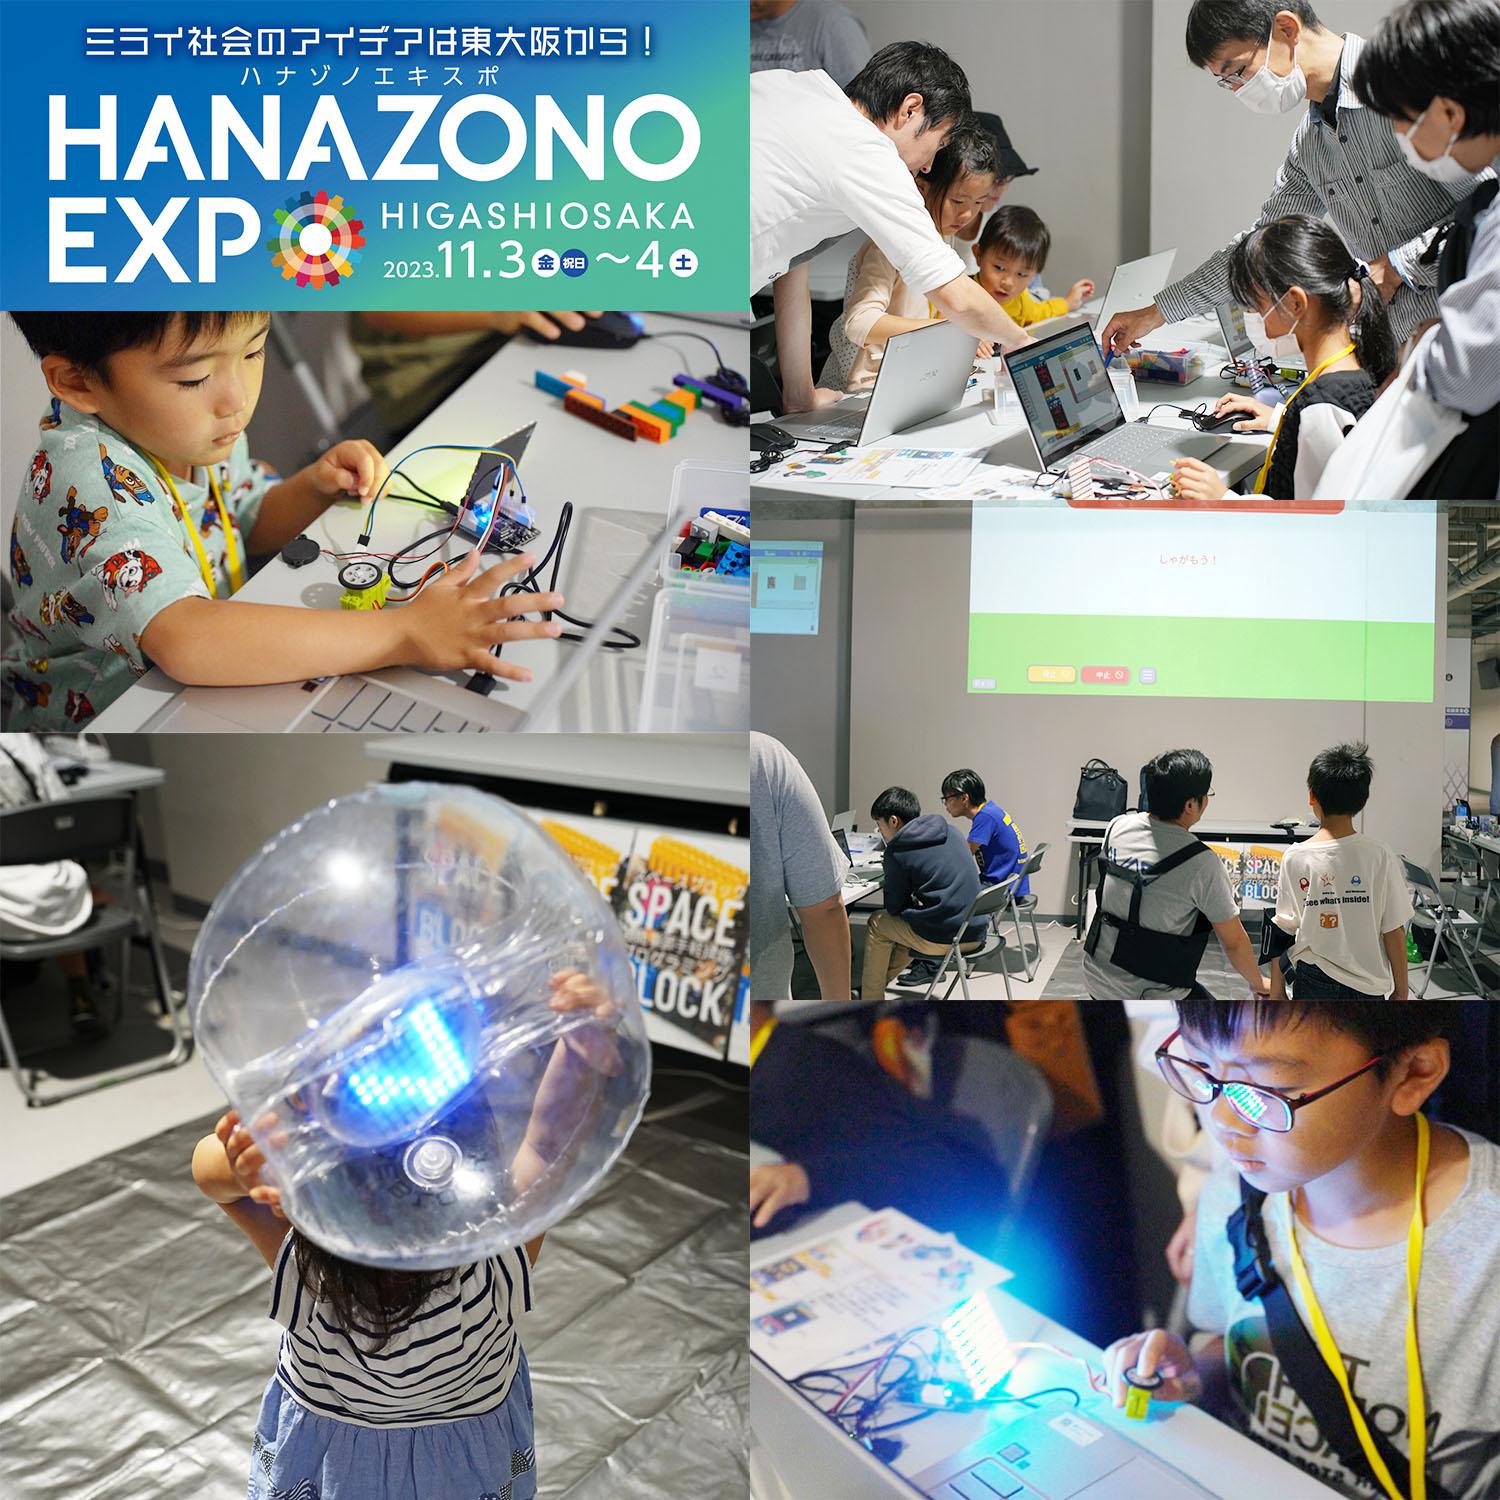 東大阪市・花園中央公園で開催された「HANAZONO EXPO 2023」にスペースブロックが出展しました